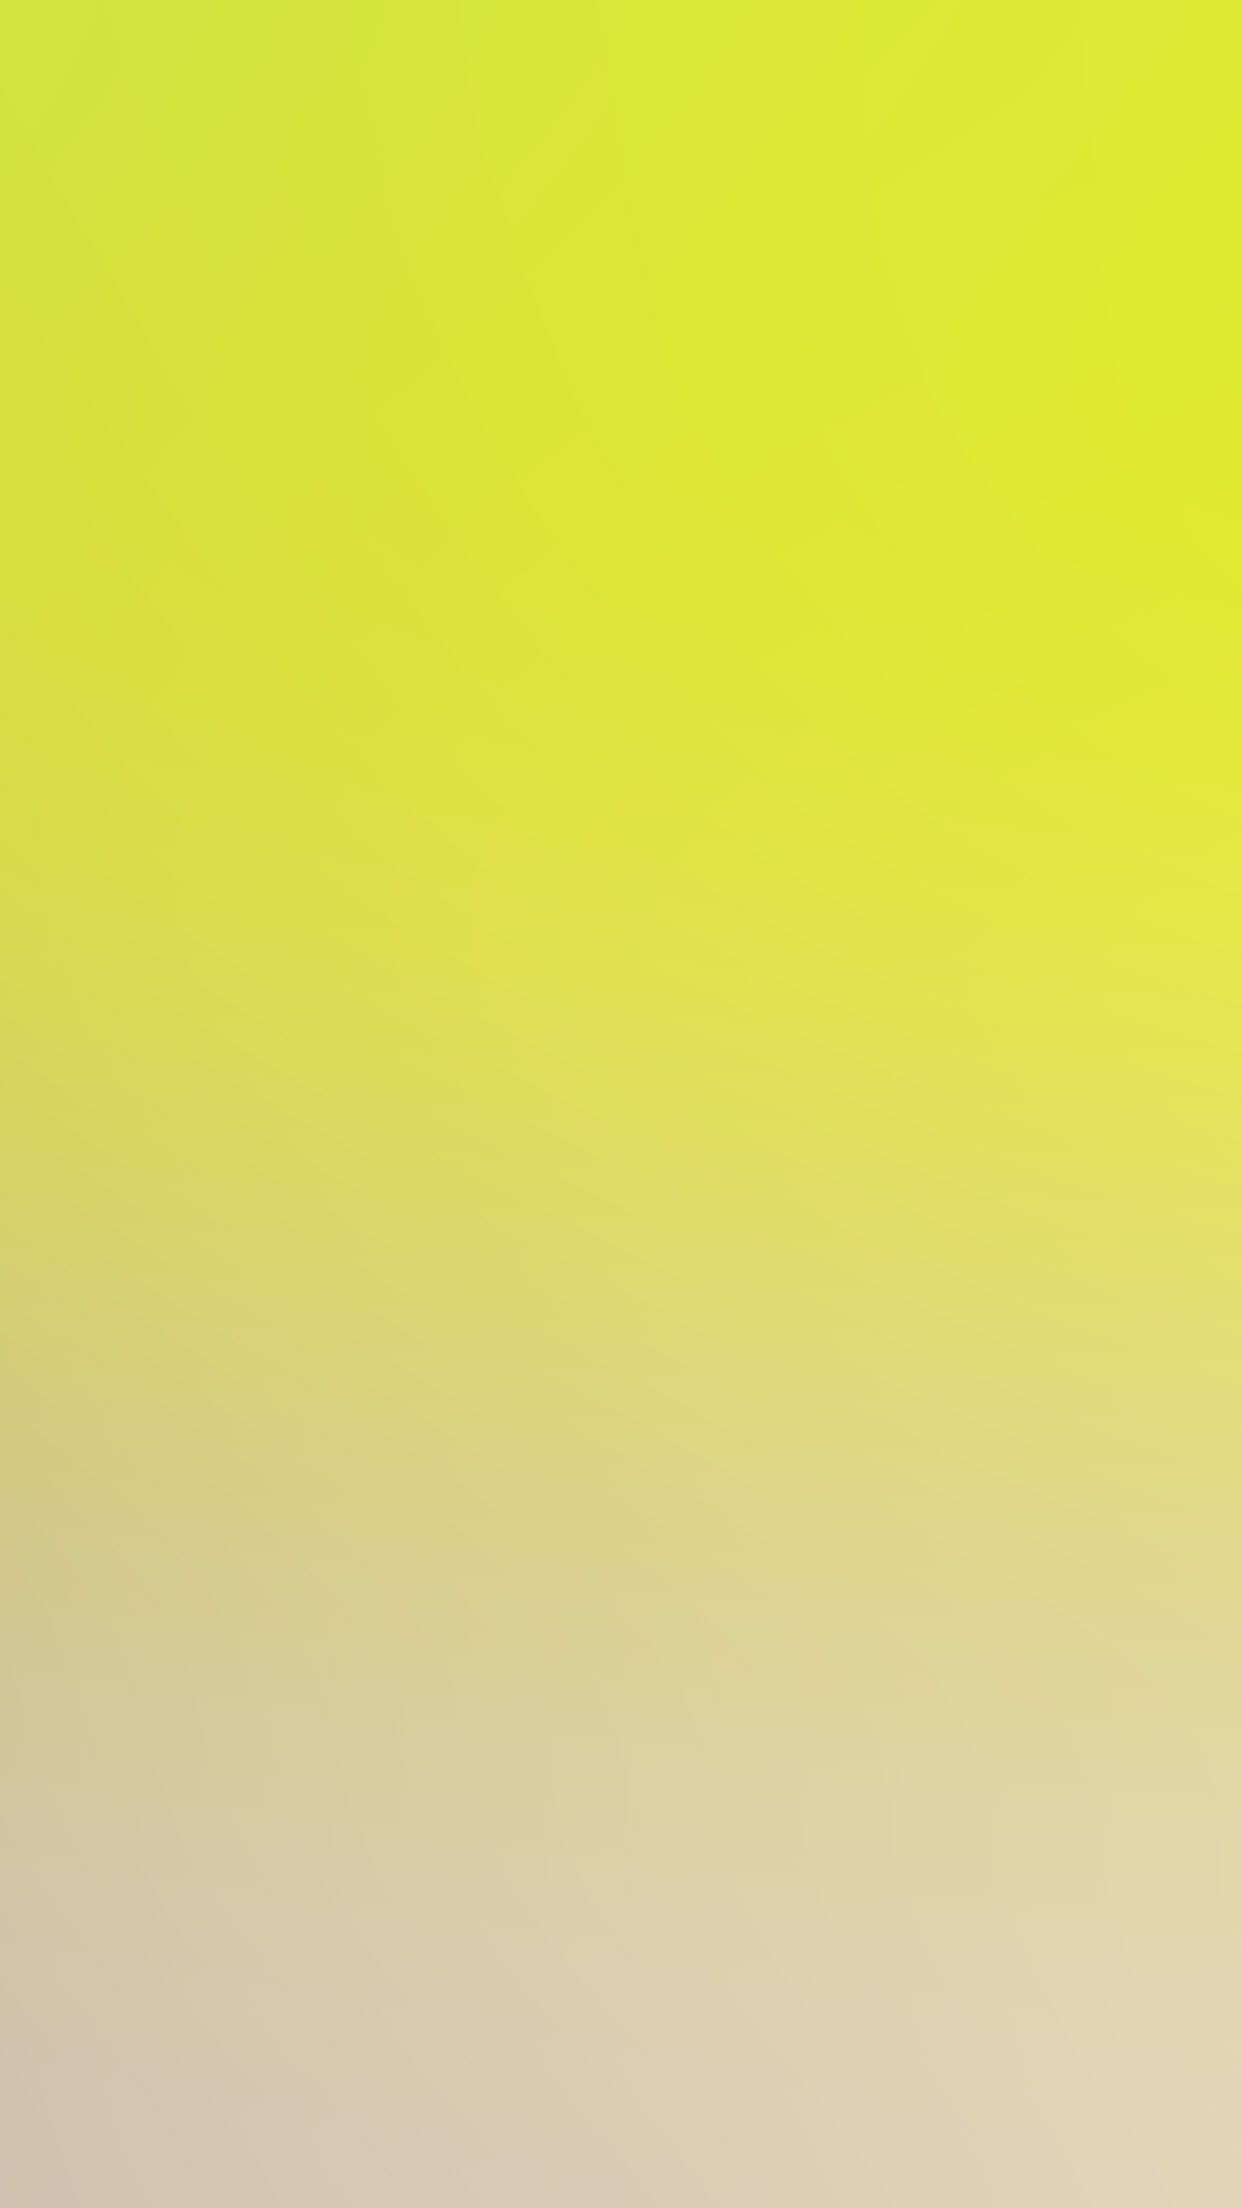 تصویر قشنگ زرد رنگ لیمویی برای والپیپر گوشی و تبلت 